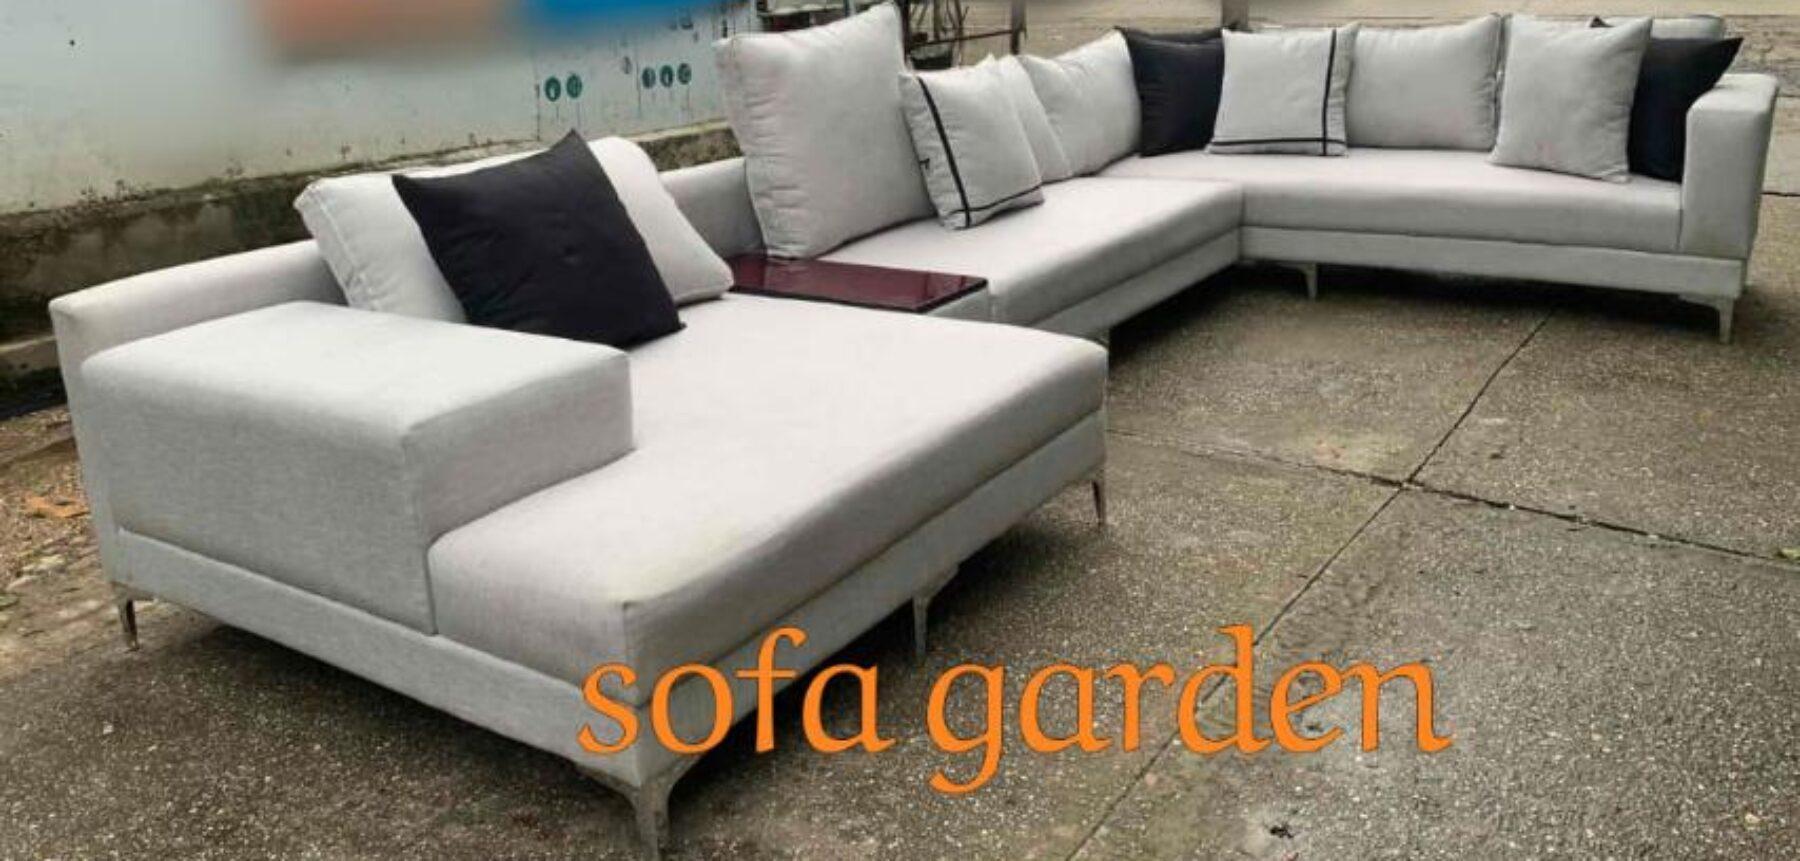 Sofa Garden